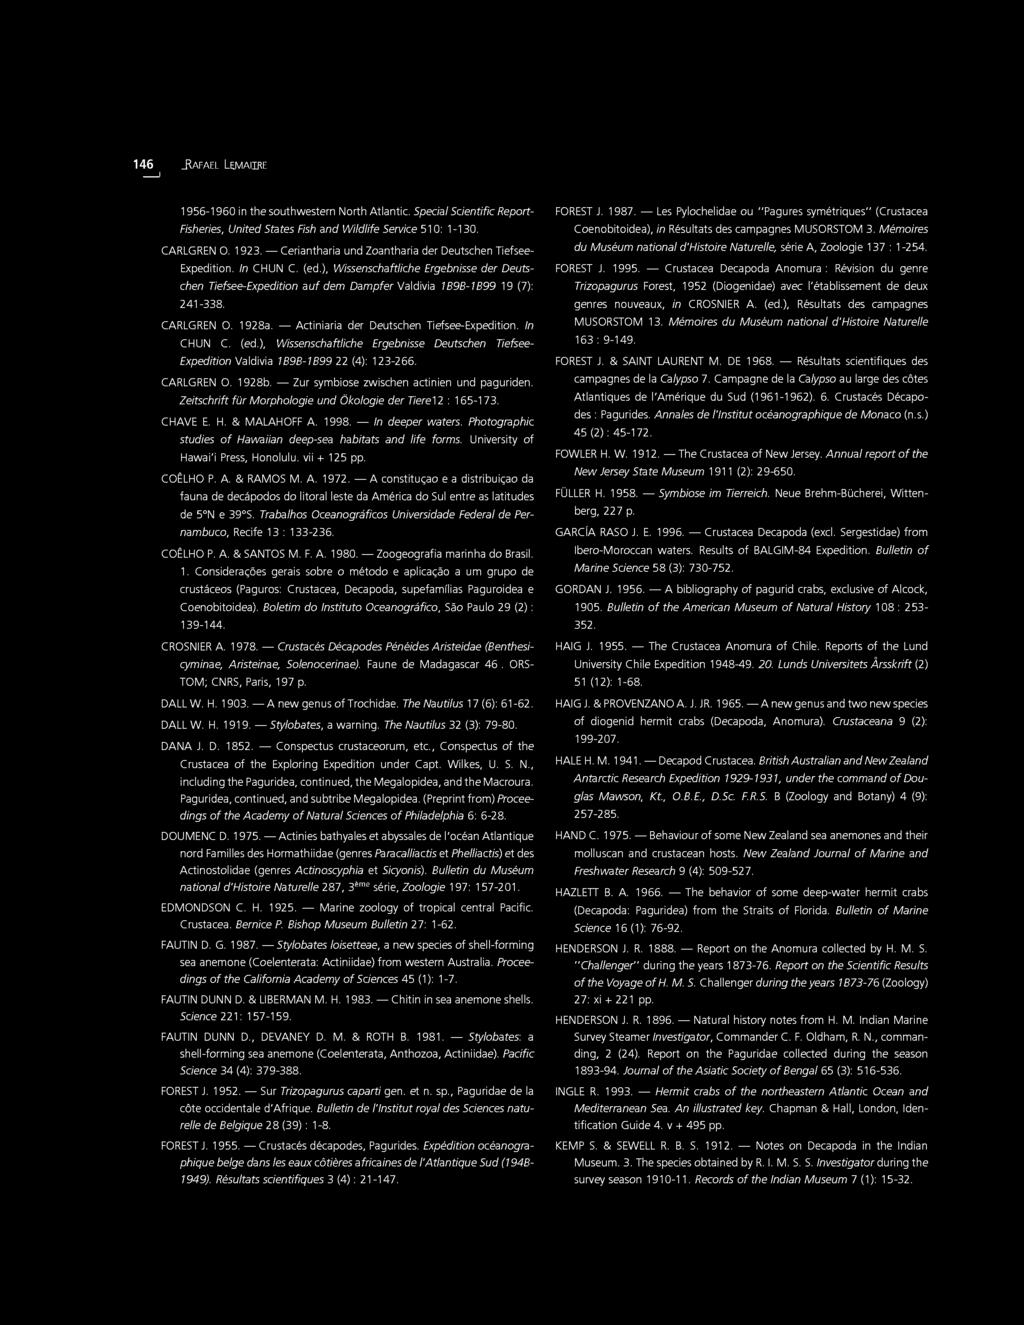 CARLGREN O. 1928a. Actiniaria der Deutschen Tiefsee-Expedition. In CHUN C. (ed.), Wissenschaftliche Ergebnisse Deutschen Tiefsee- Expedition Valdivia 1898-1899 22 (4): 123-255. CARLGREN O. 1928b.